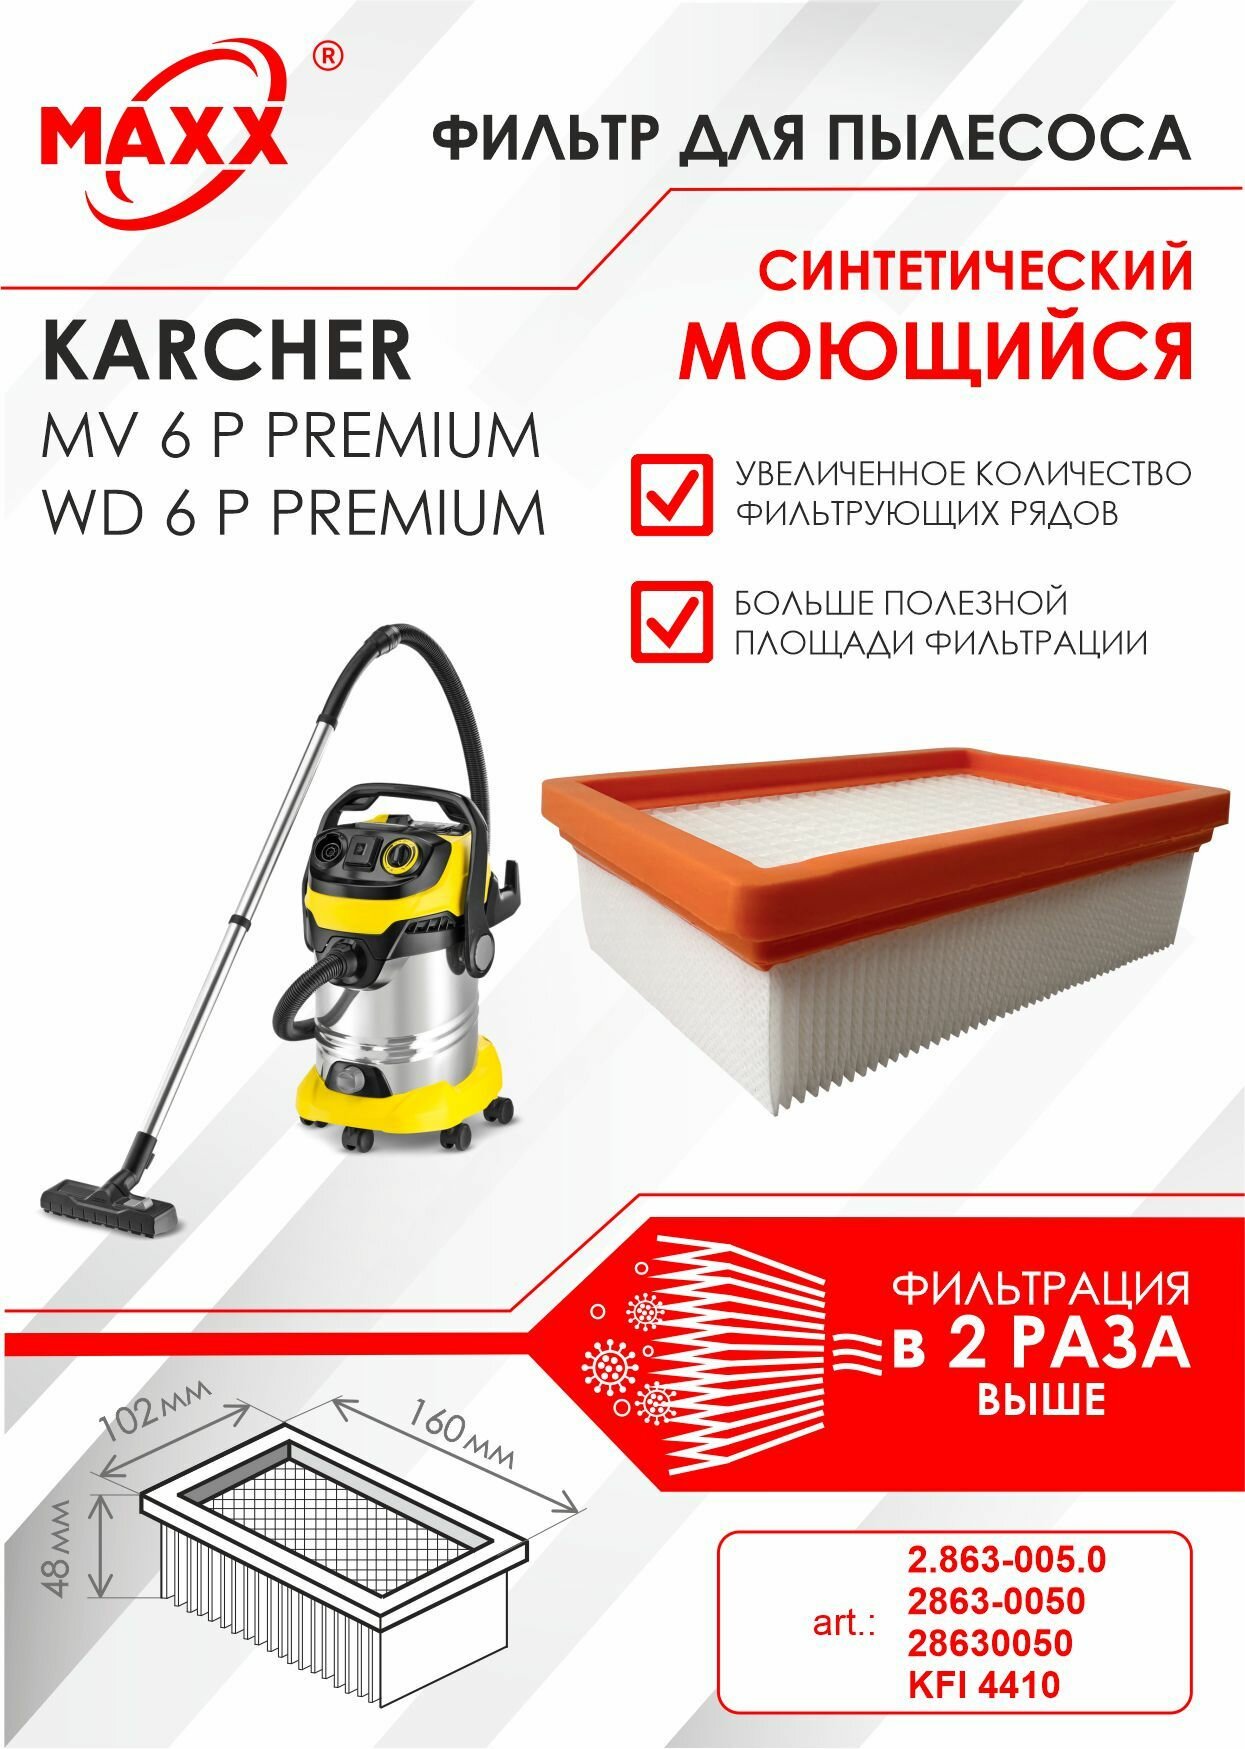 Плоский складчатый фильтр синтетический моющийся для пылесоса Karcher MV 6 MV 6 Premium Karcher WD 6 WD 6 Premium